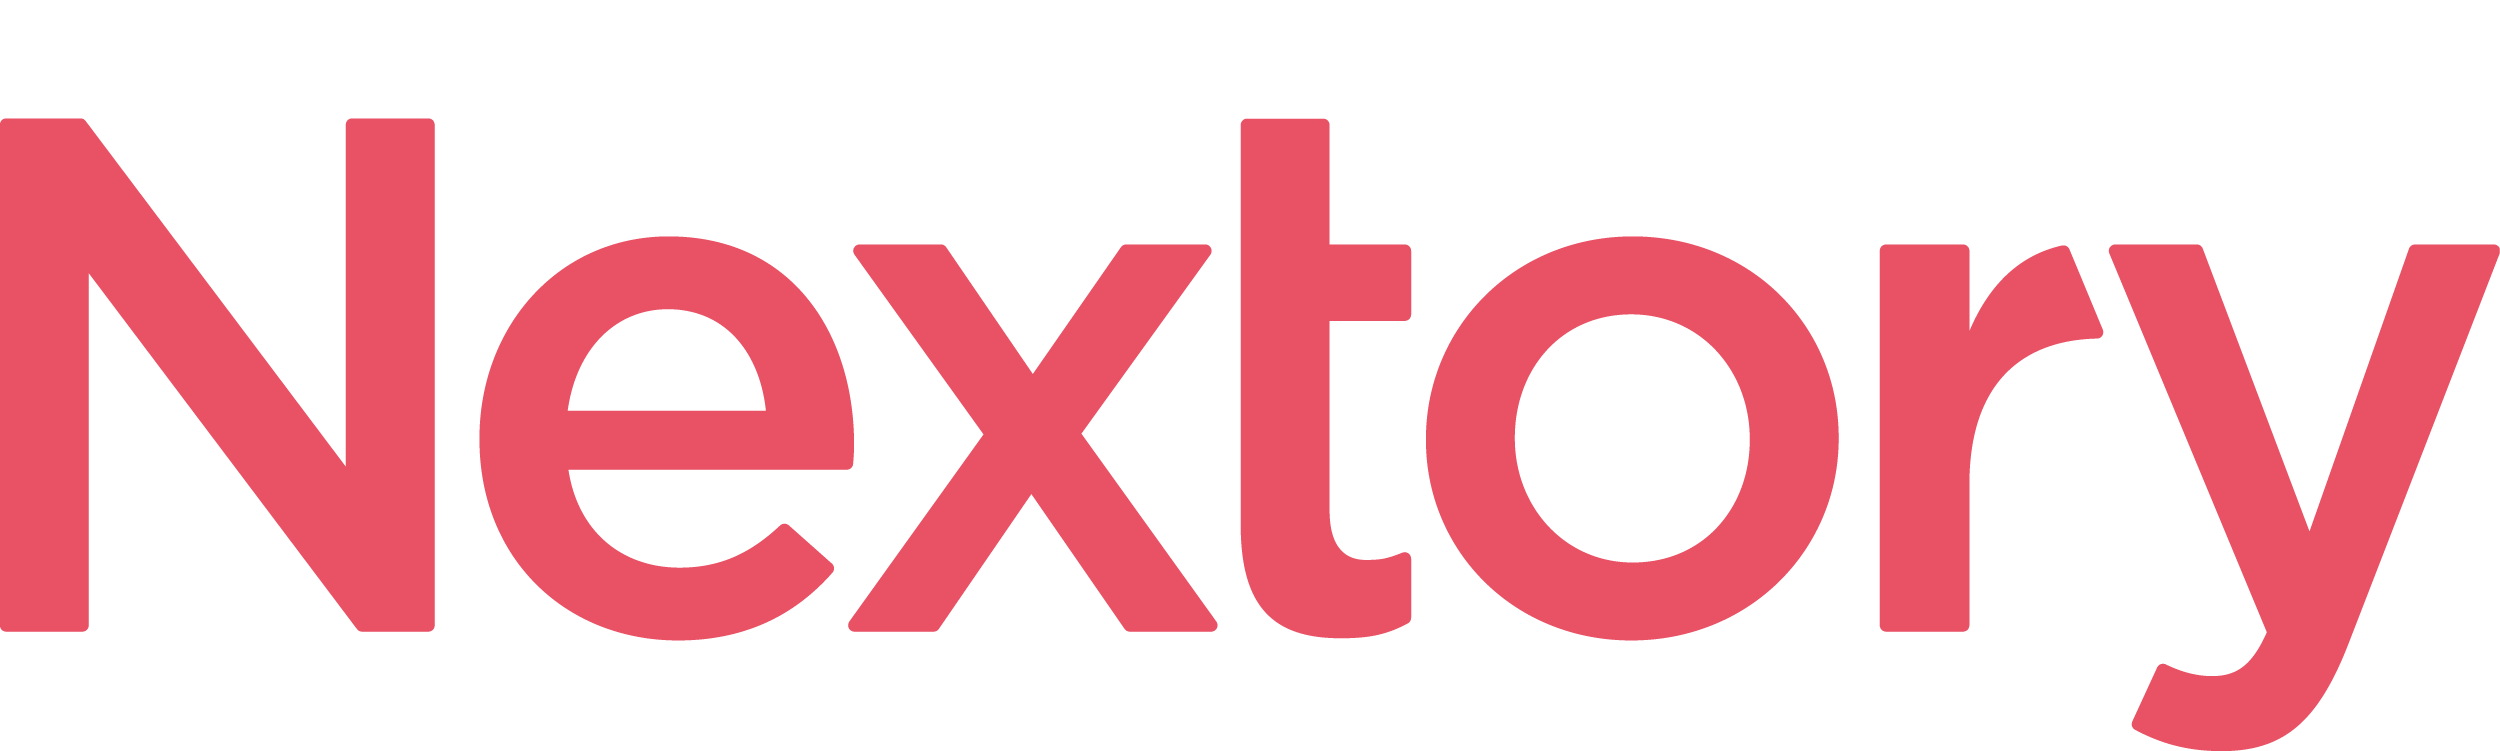 Nextoryn logo